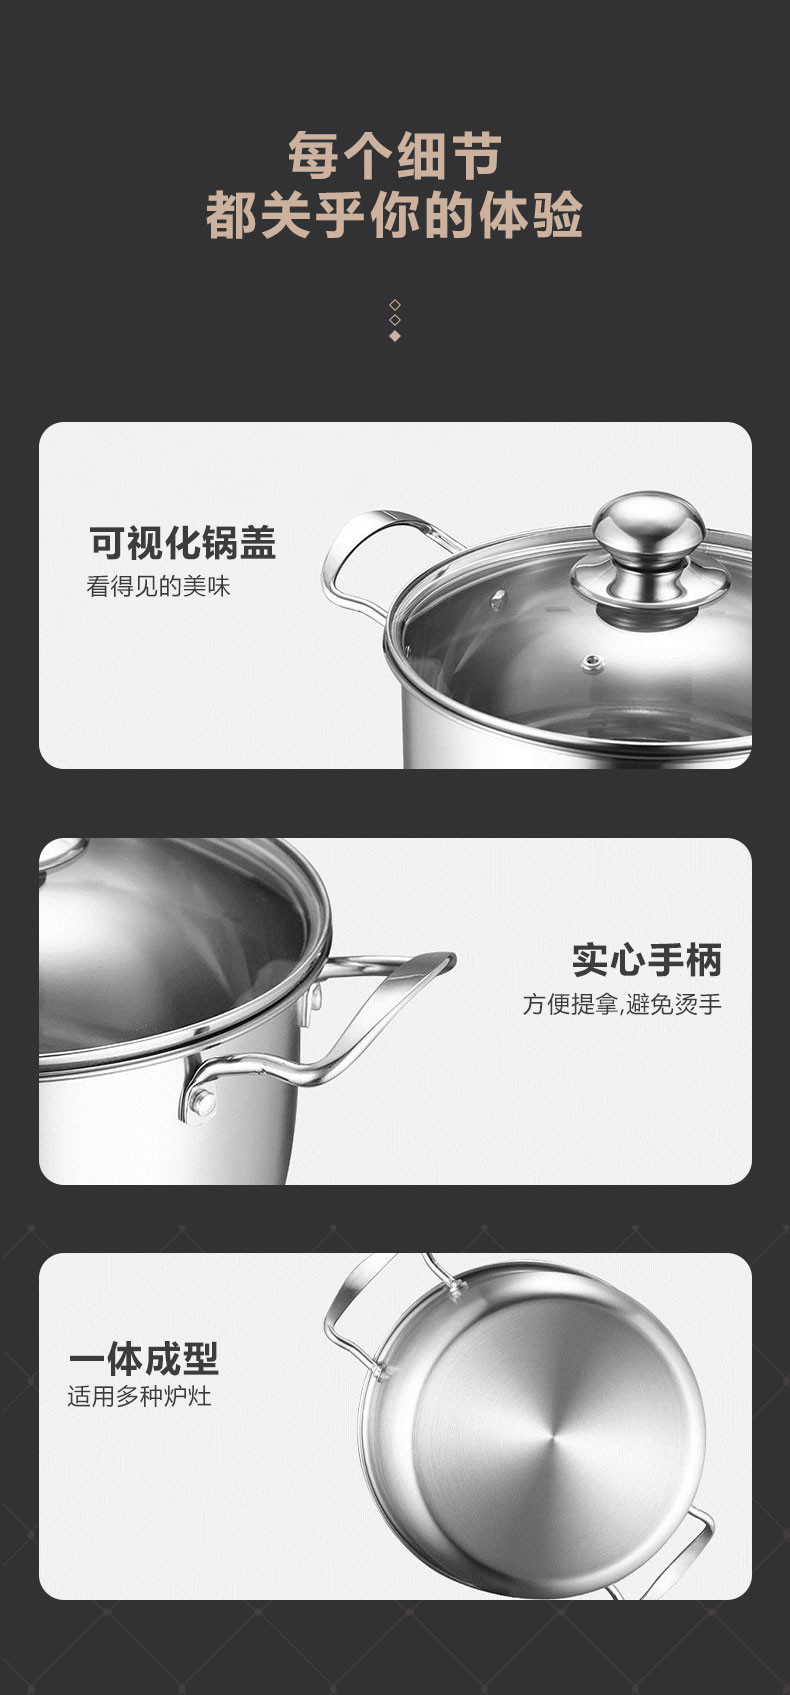 龙的/Longde 龙的/Longde 乐膳系列 不锈钢汤锅